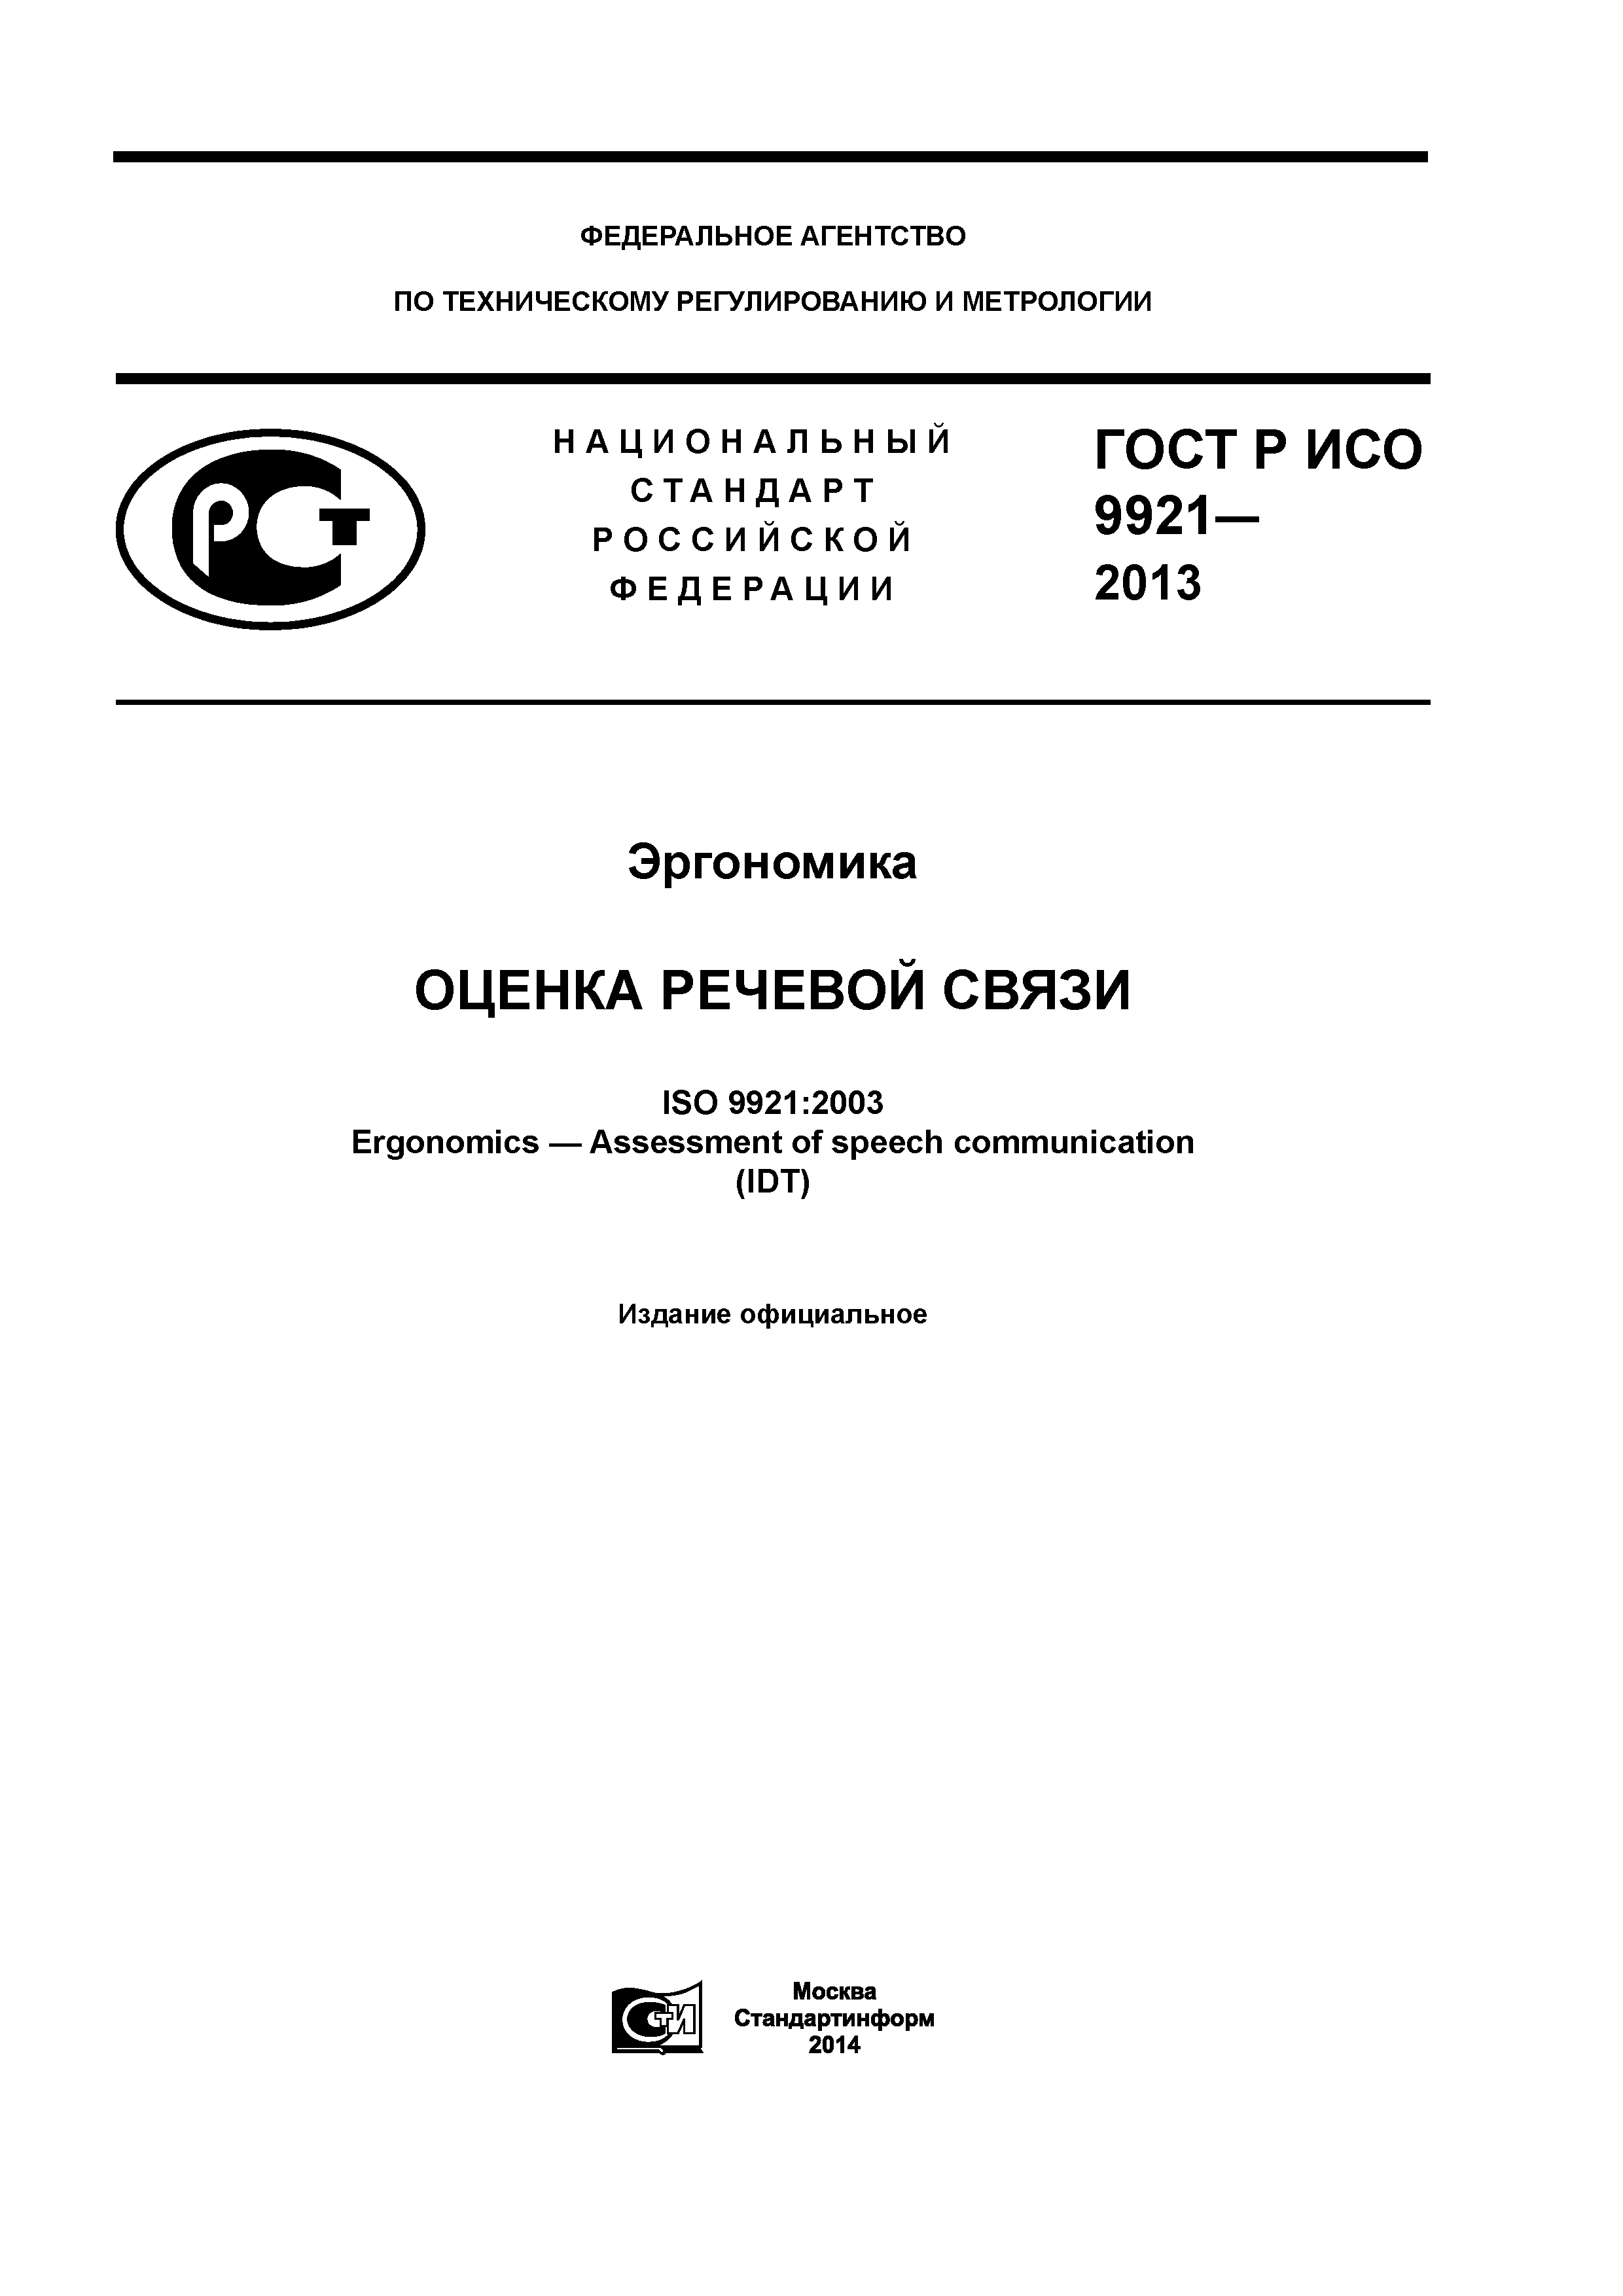 ГОСТ Р ИСО 9921-2013